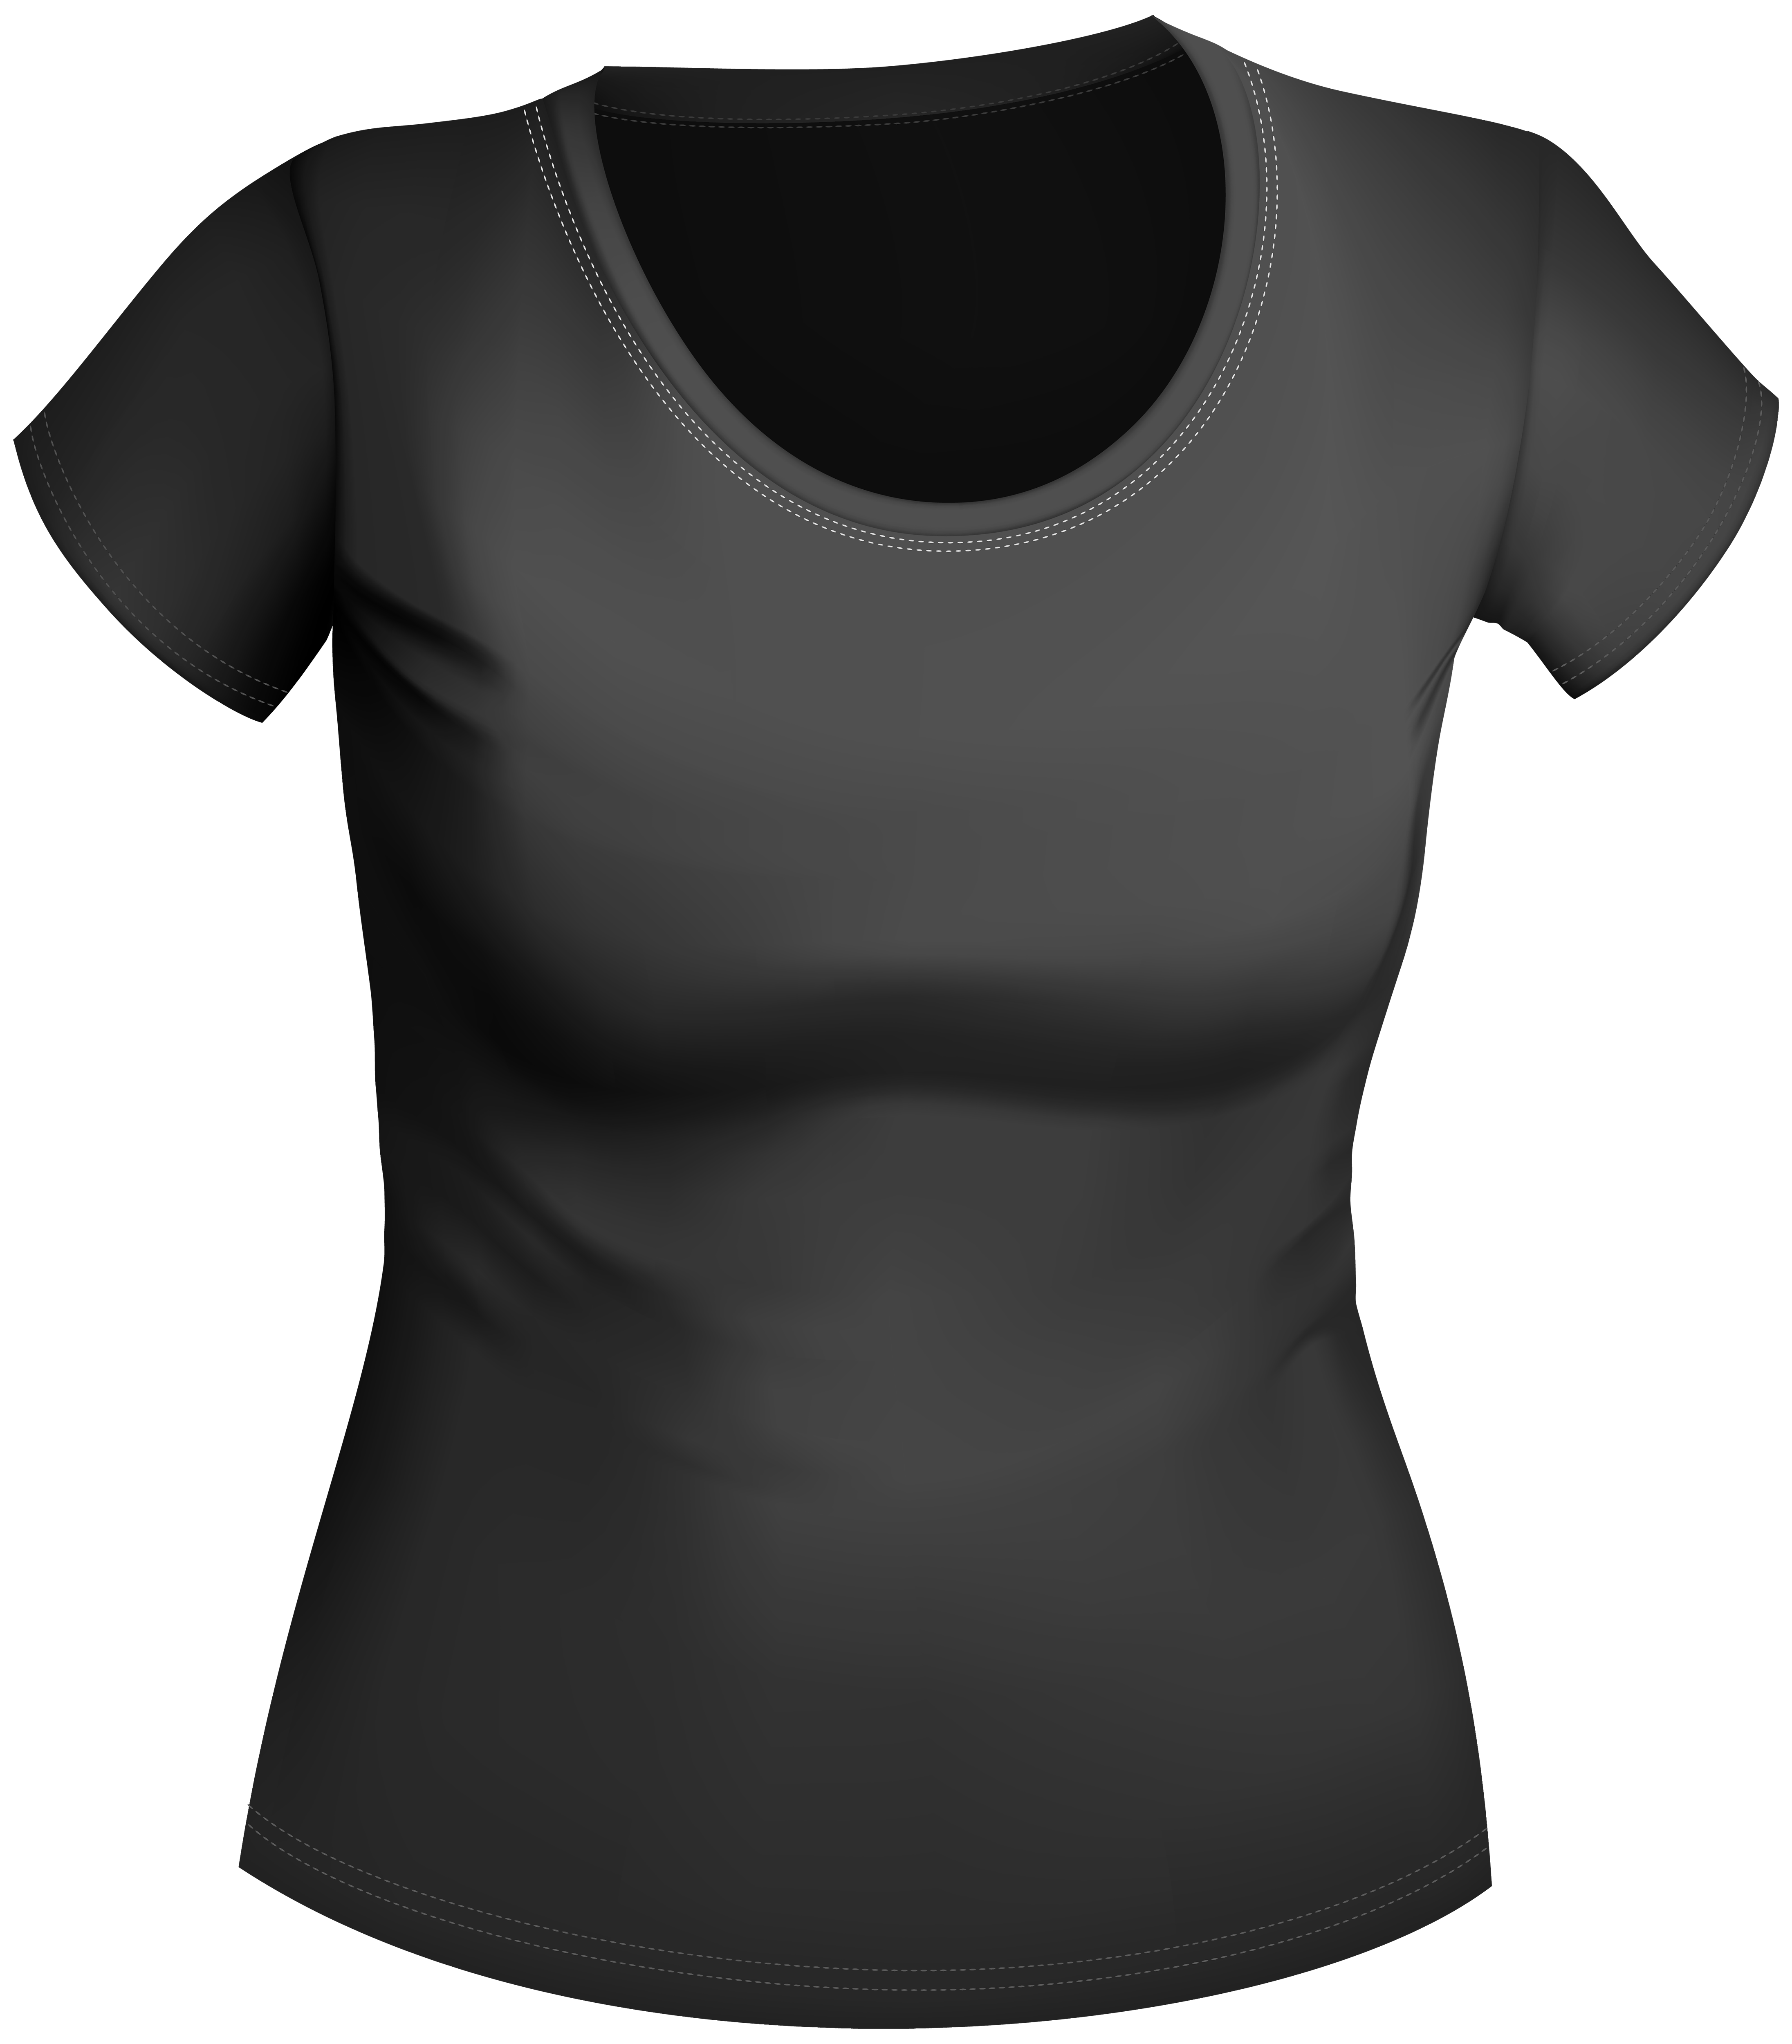 Female Black Shirt PNG Clipart - Best WEB Clipart